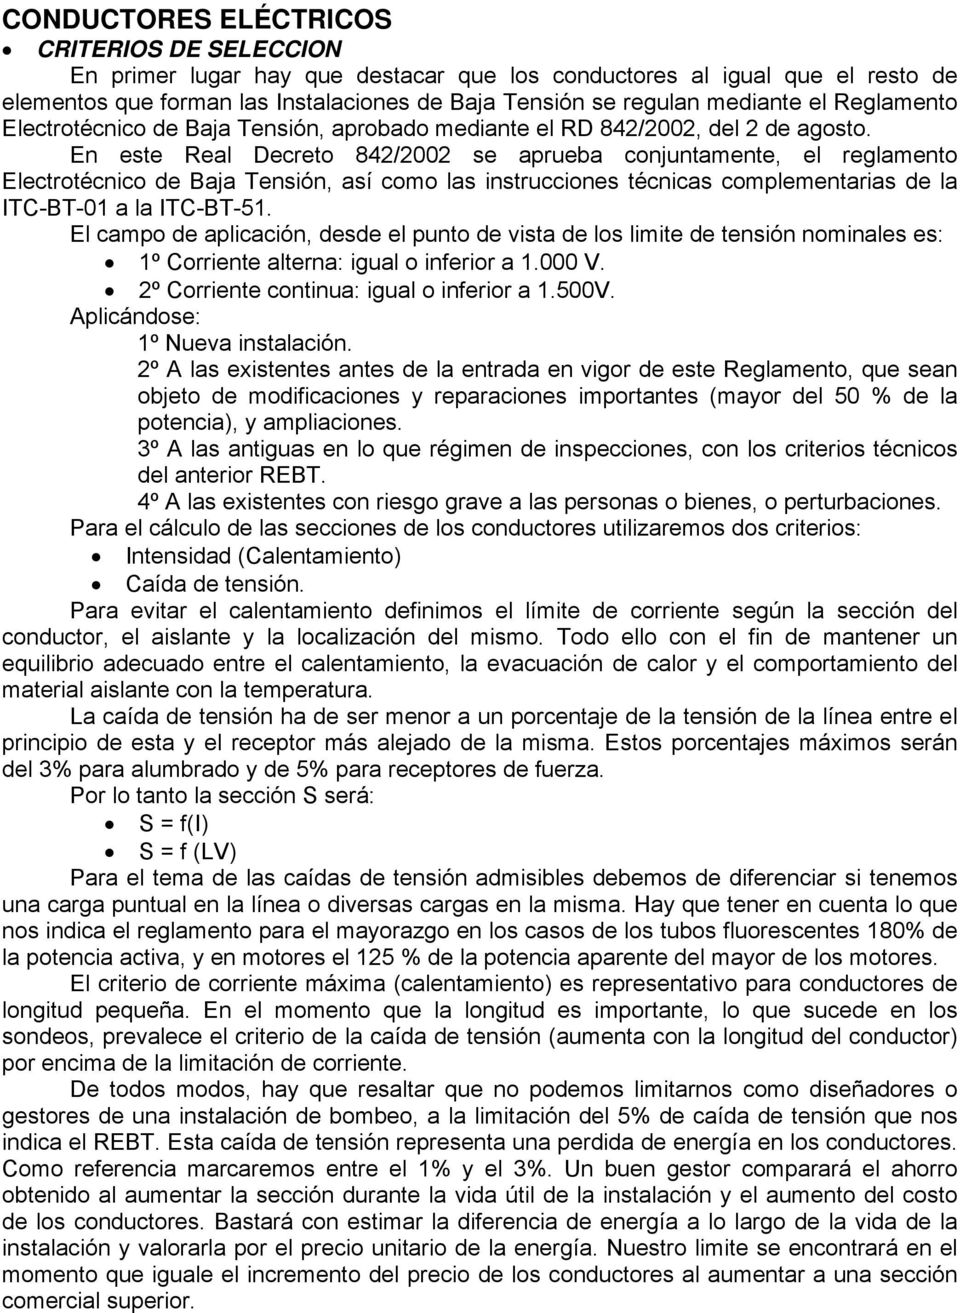 En este Real Decreto 842/2002 se aprueba conjuntamente, el reglamento Electrotécnico de Baja Tensión, así como las instrucciones técnicas complementarias de la ITC-BT-01 a la ITC-BT-51.